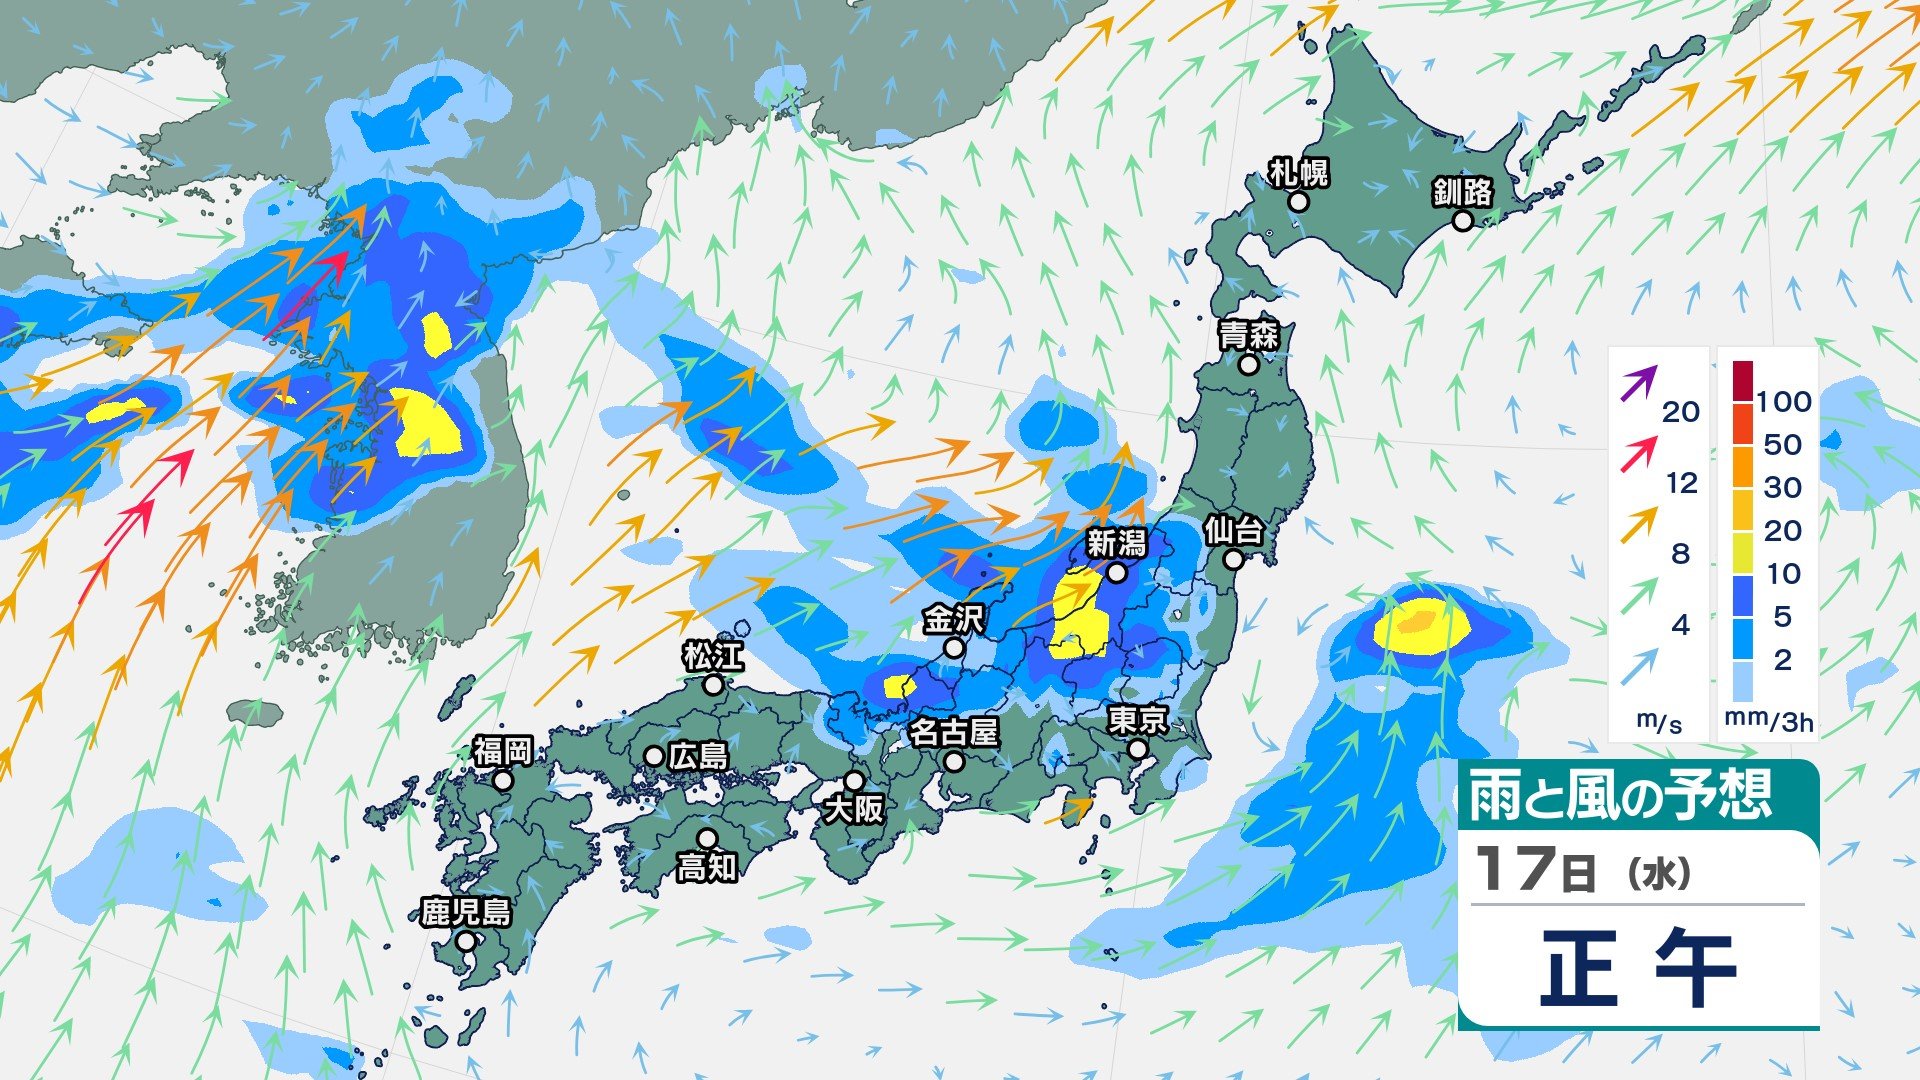 九州～関東甲信では17日にかけて局地的に雷伴う非常に激しい雨のおそれ　17日朝までに長崎県180ミリ、静岡県150ミリの予想降水量【今後の雨と風のシミュレーション】